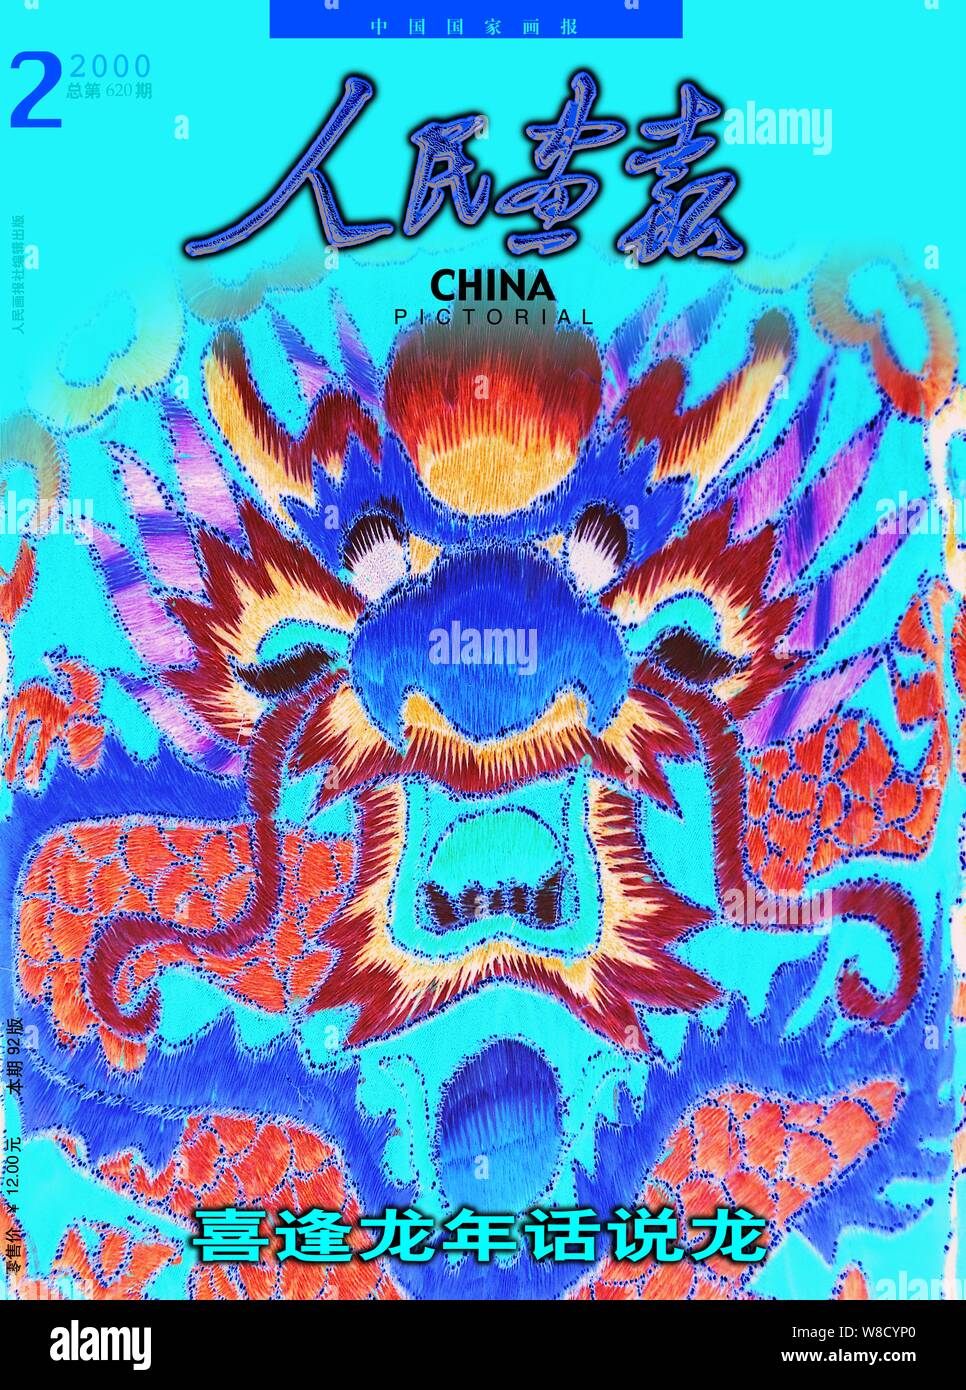 Cette couverture de la Chine Pictorial publié en février 2000, dispose d'une oeuvre d'art de la broderie d'une tête de dragon. Banque D'Images